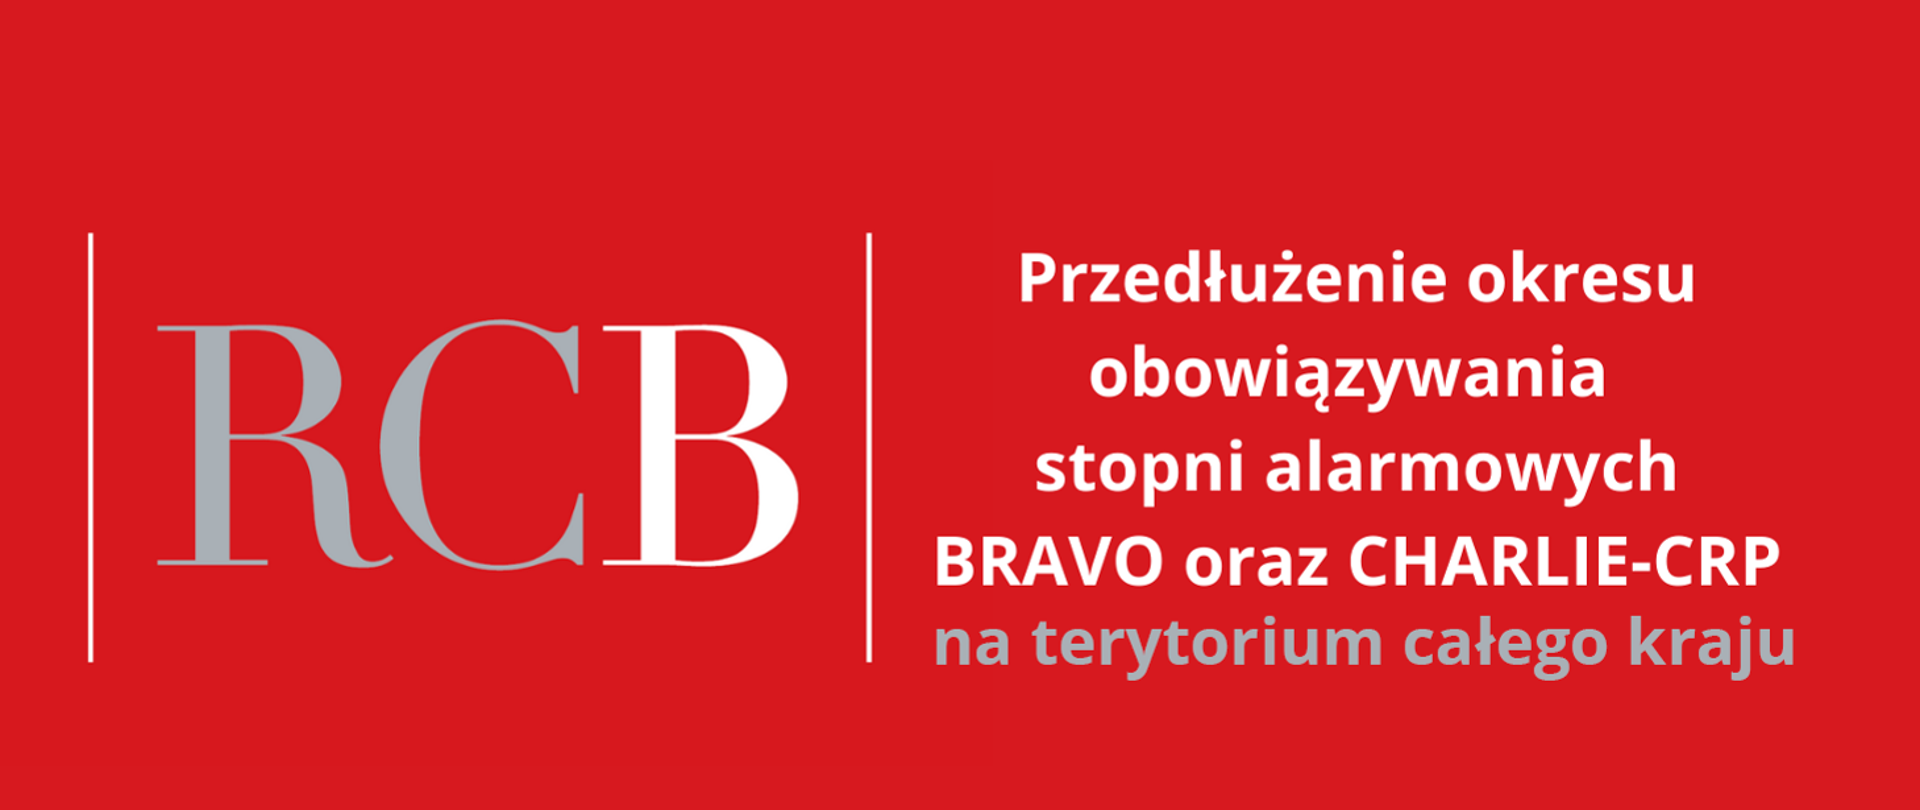 Na czerwonym tle z lewej strony umieszczono duży skrót " RCB", z prawej strony napis" Przedłużenie okresu obowiązywania stopni alarmowych BraVo oraz Charlie- CRP na terytorium całego kraju"